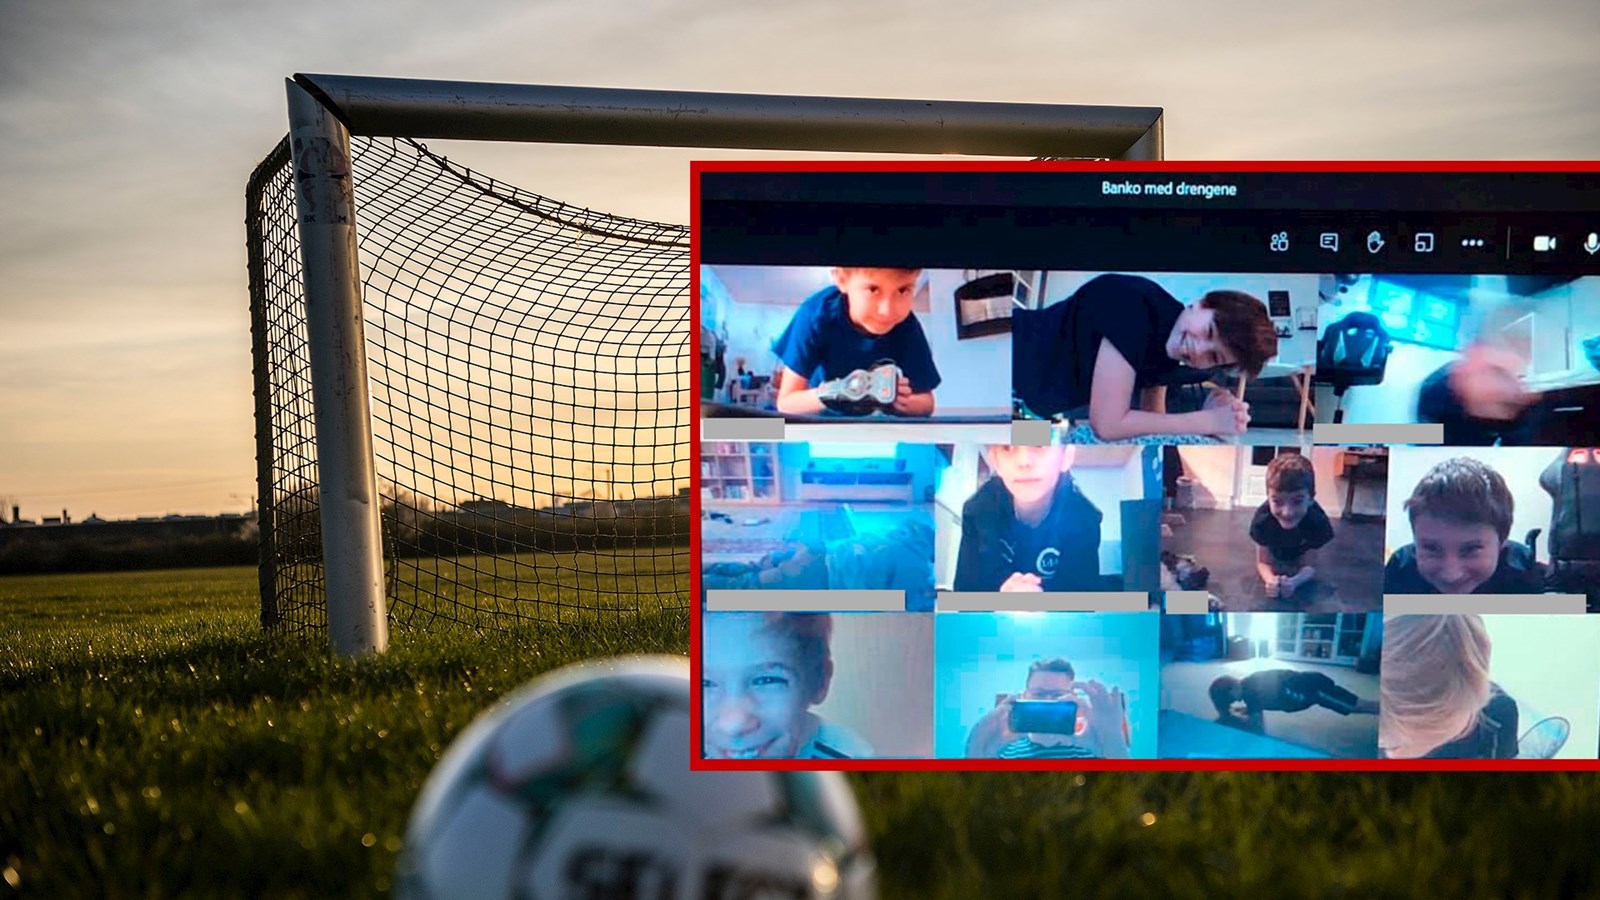 Banko kan også være virtuel fodboldtræning